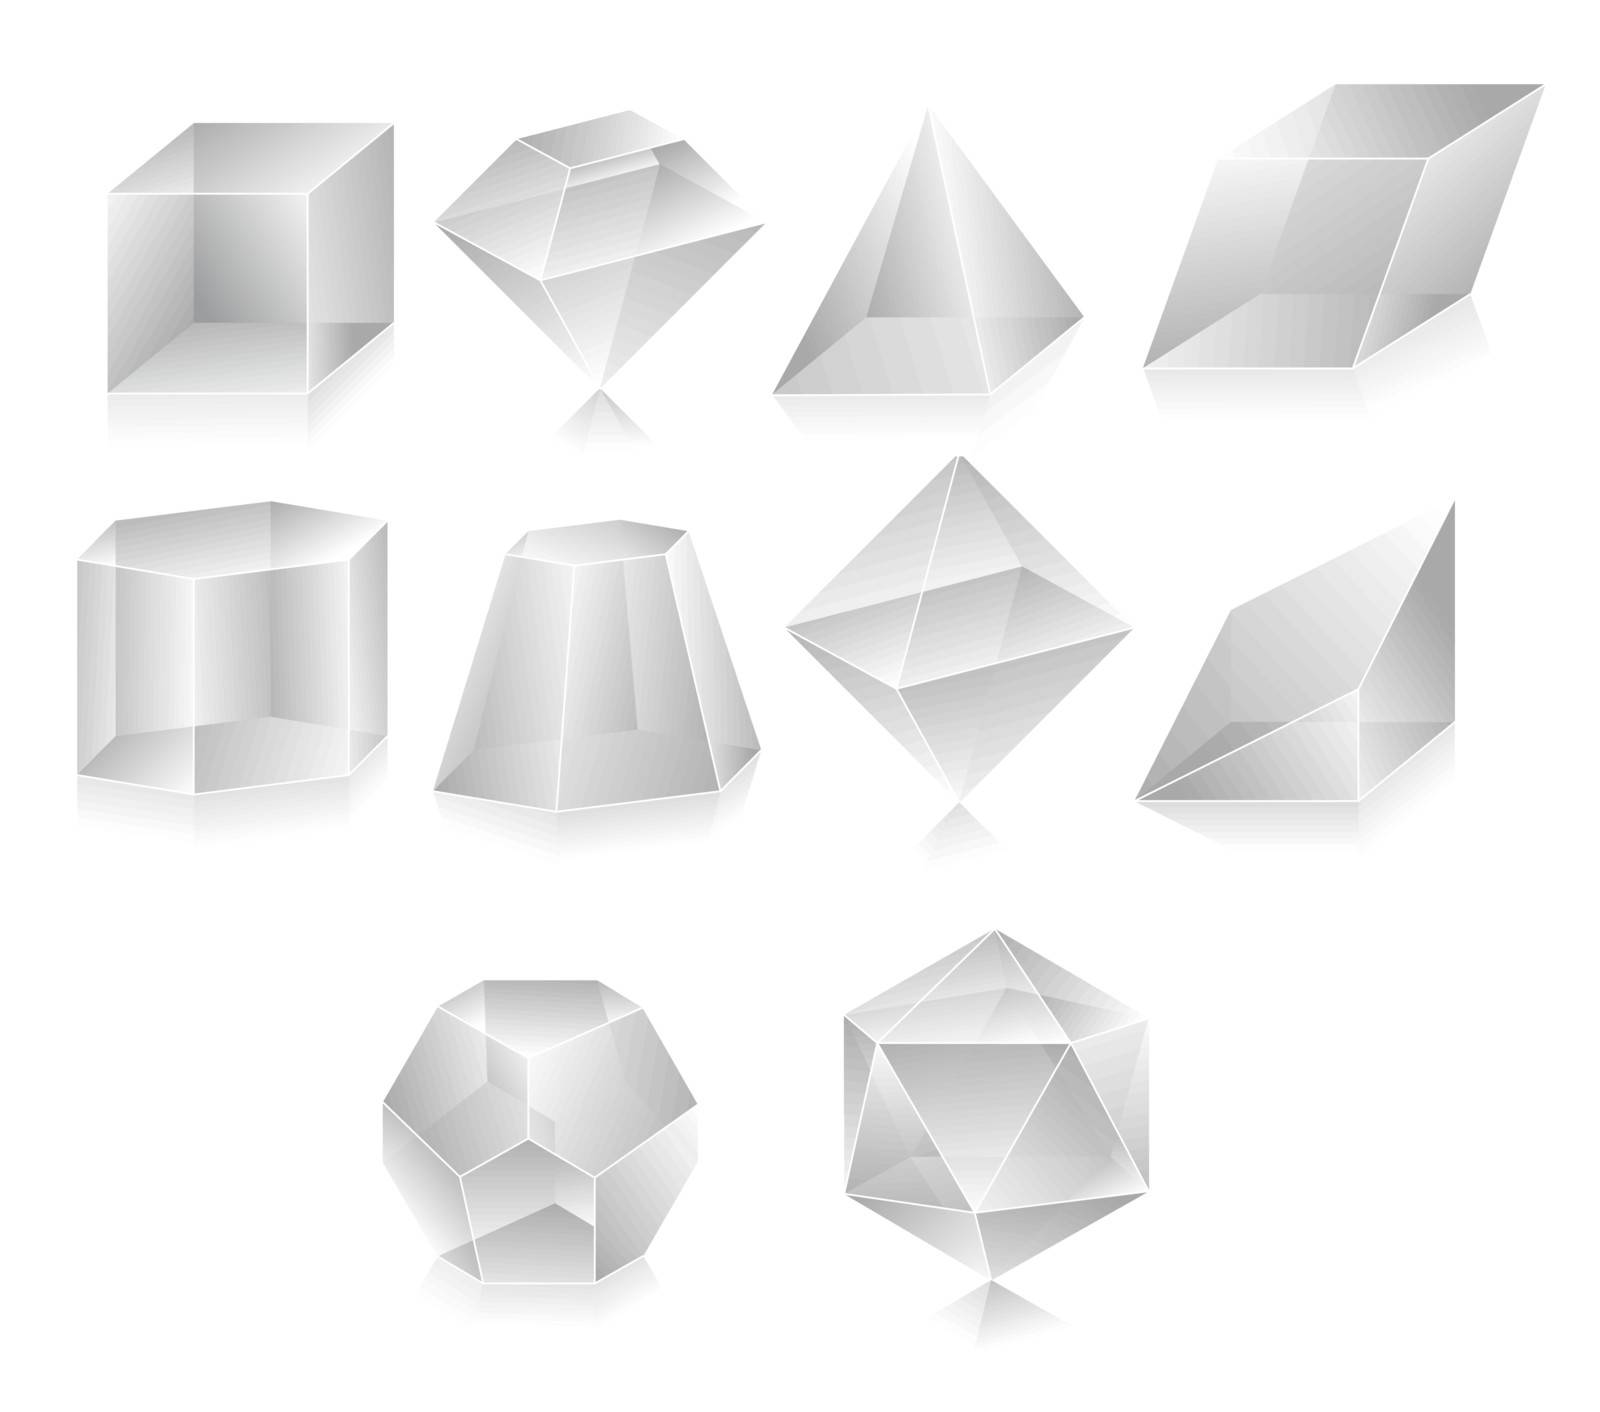 Blank translucent 3d shapes design illustration